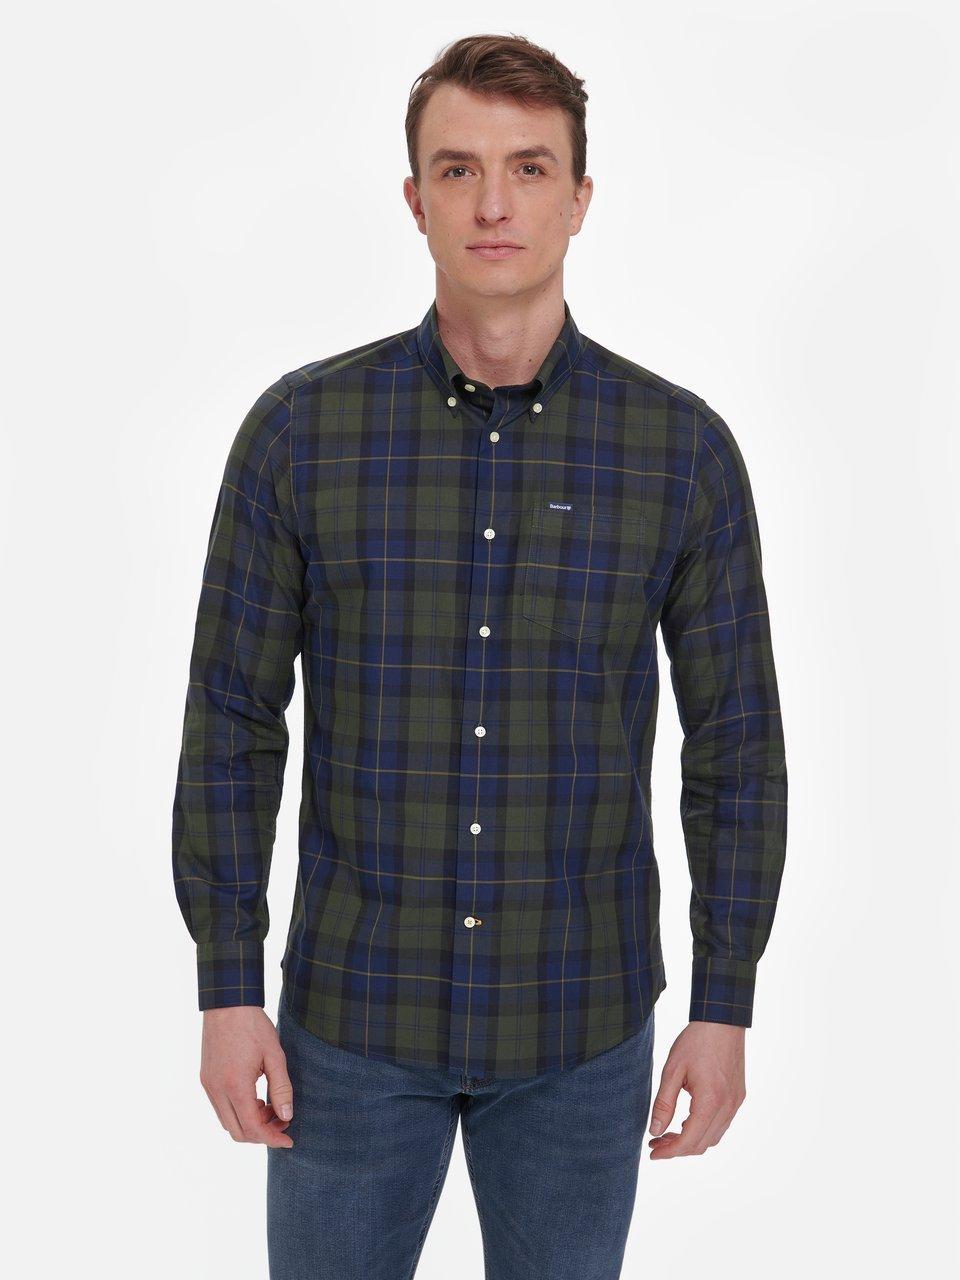 Barbour - La chemise à carreaux « Wetheram Tailored Shirt »